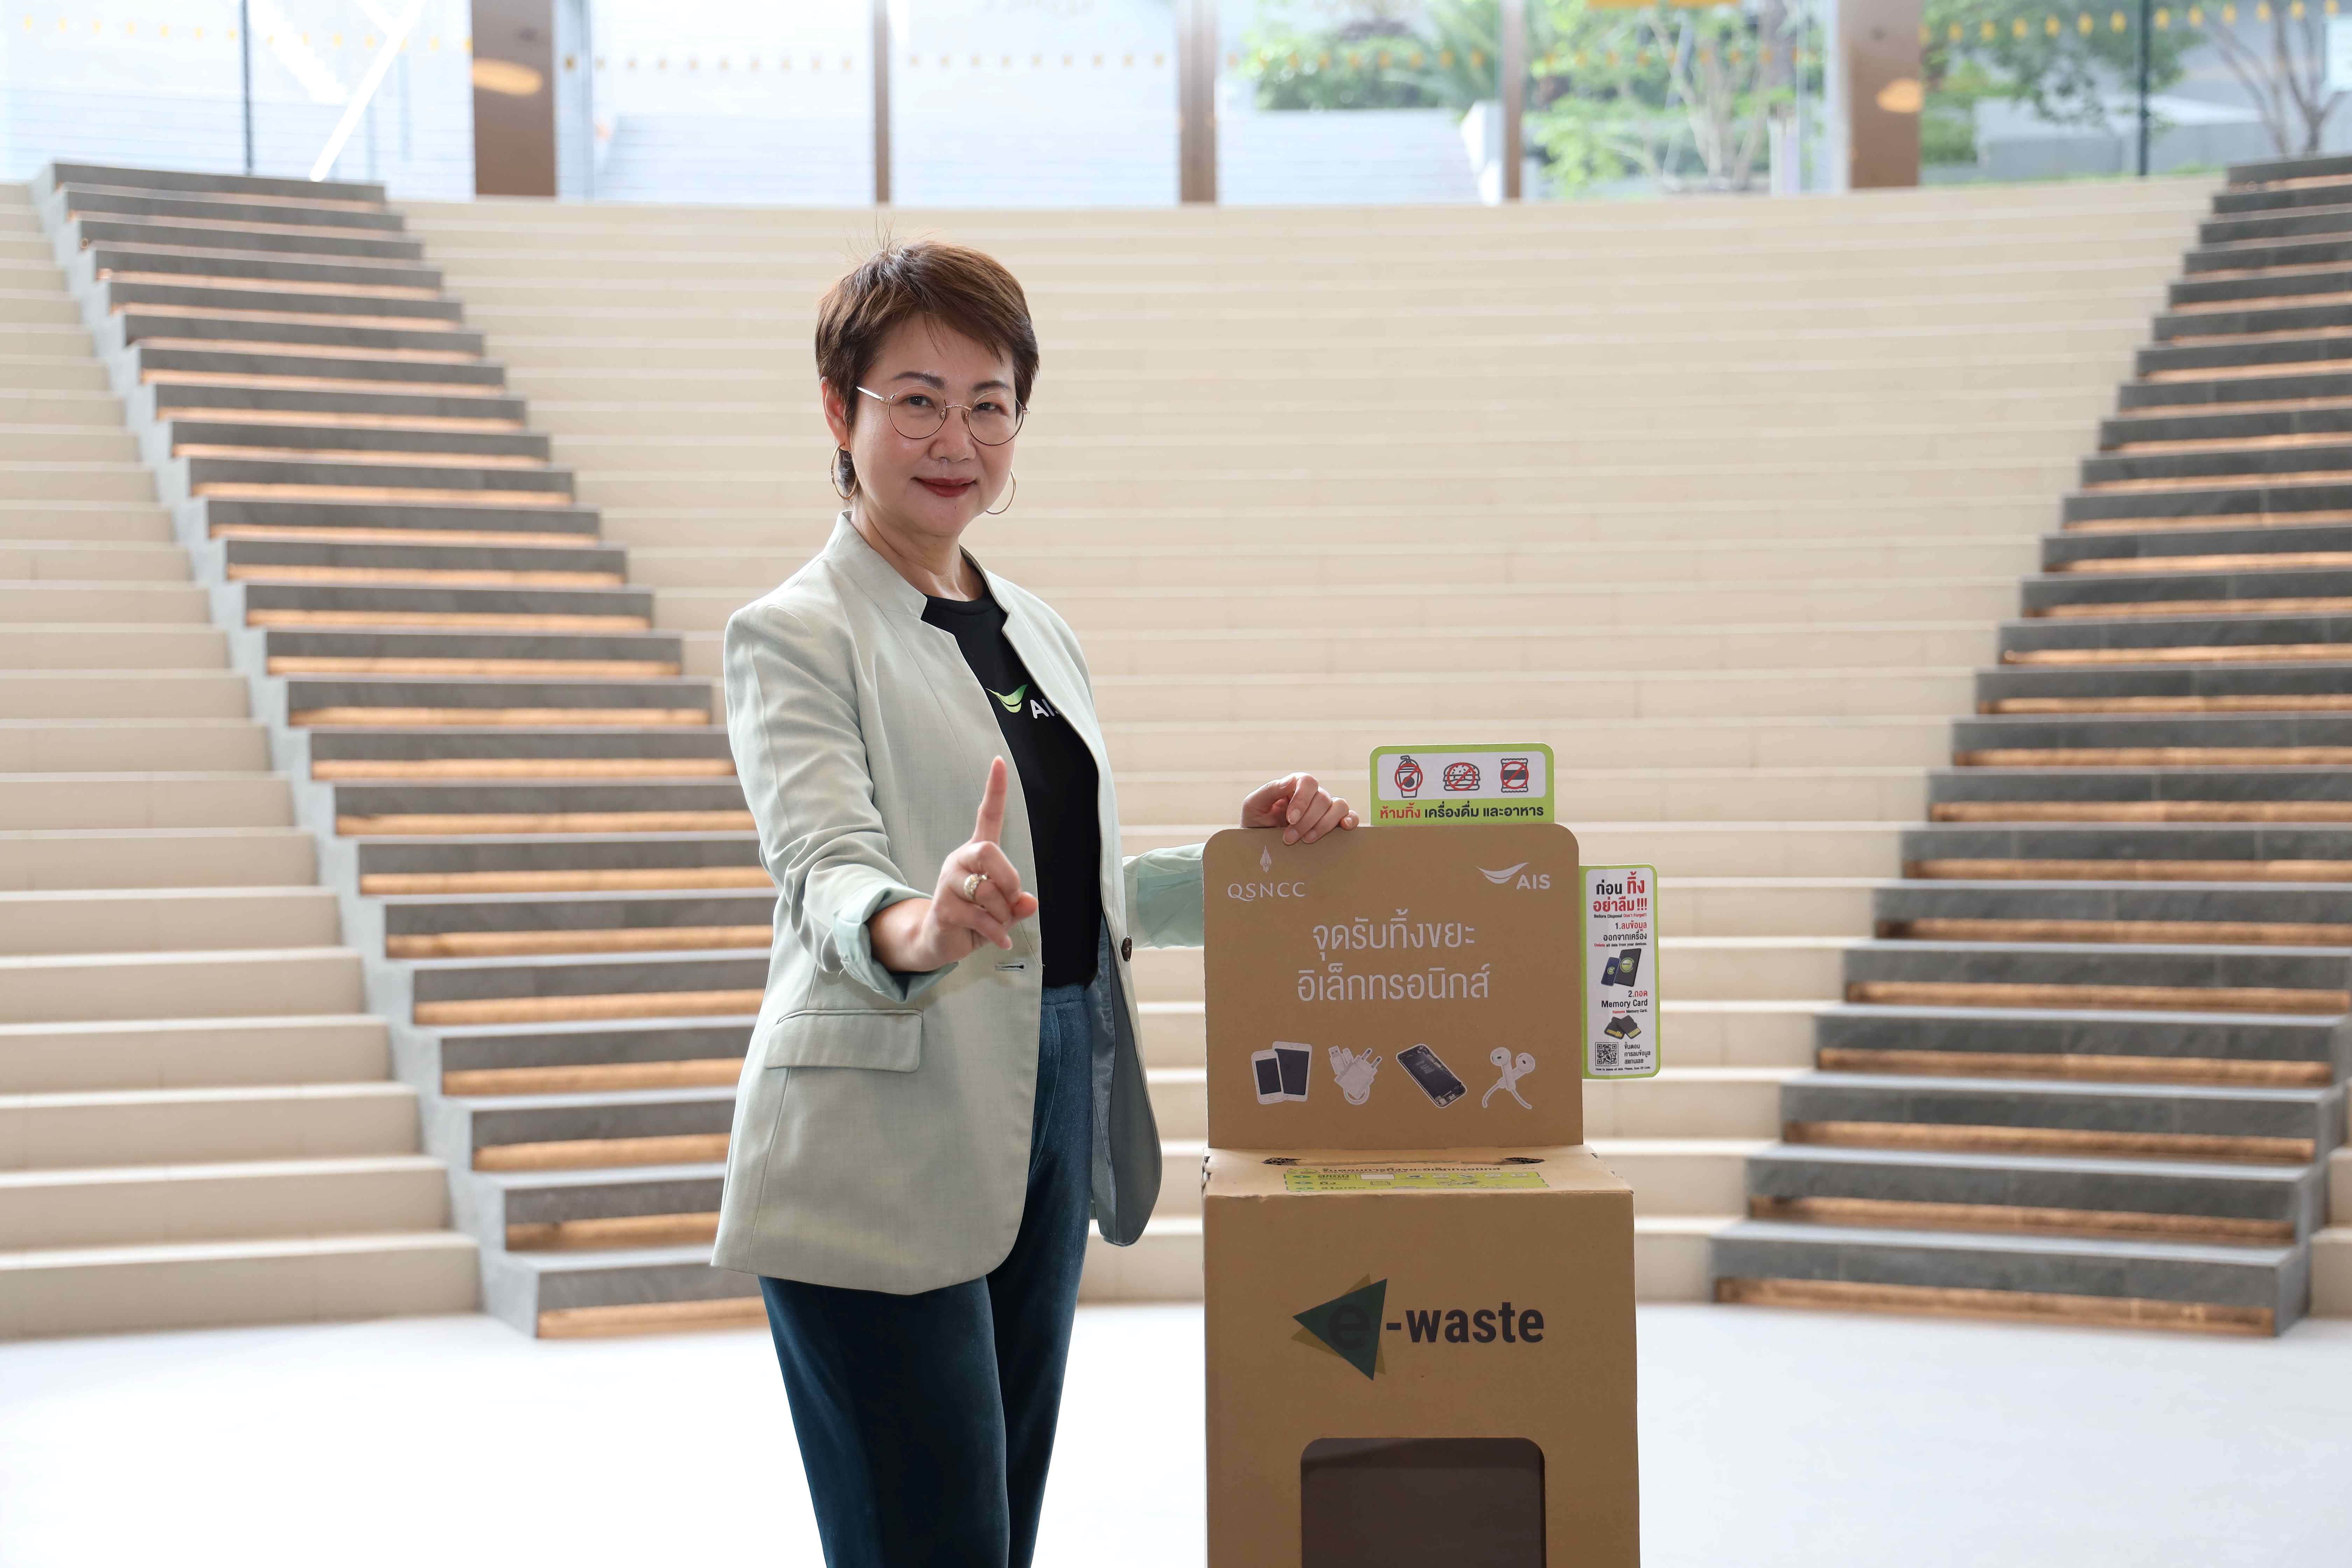 AIS ชูภารกิจคนไทยไร้ e-waste ผนึก 3 องค์กรชั้นนำ ชวนคนไทยมีส่วนร่วมแก้ไขปัญหาในวันสิ่งแวดล้อมโลก เดินหน้า Hub จัดการขยะอิเล็กทรอนิกส์ยั่งยืน